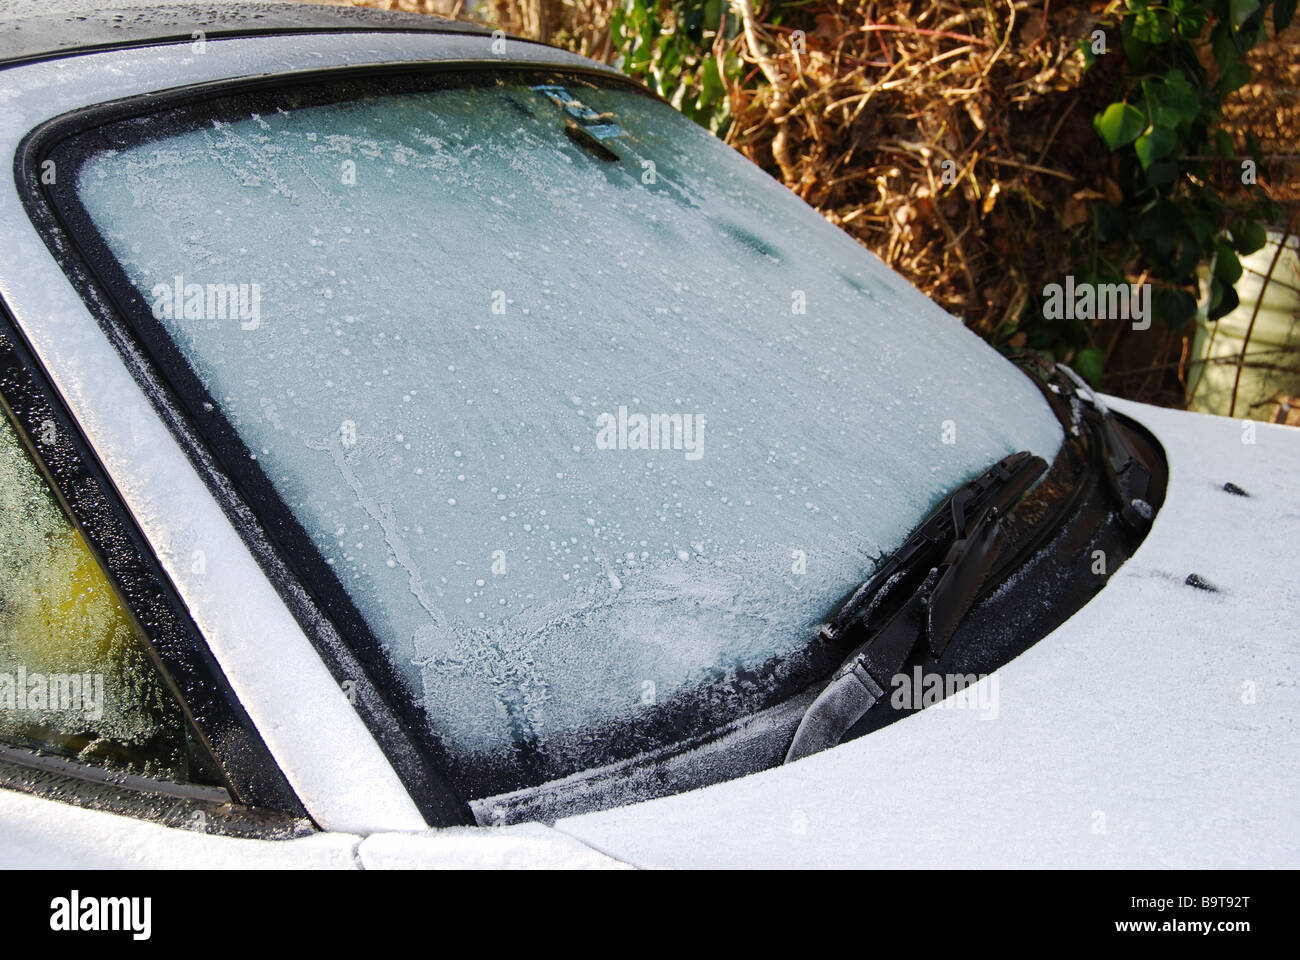 Kfz Auto Windschutzscheibe Frontscheibe bedeckt in Frost und Eis  Stockfotografie - Alamy